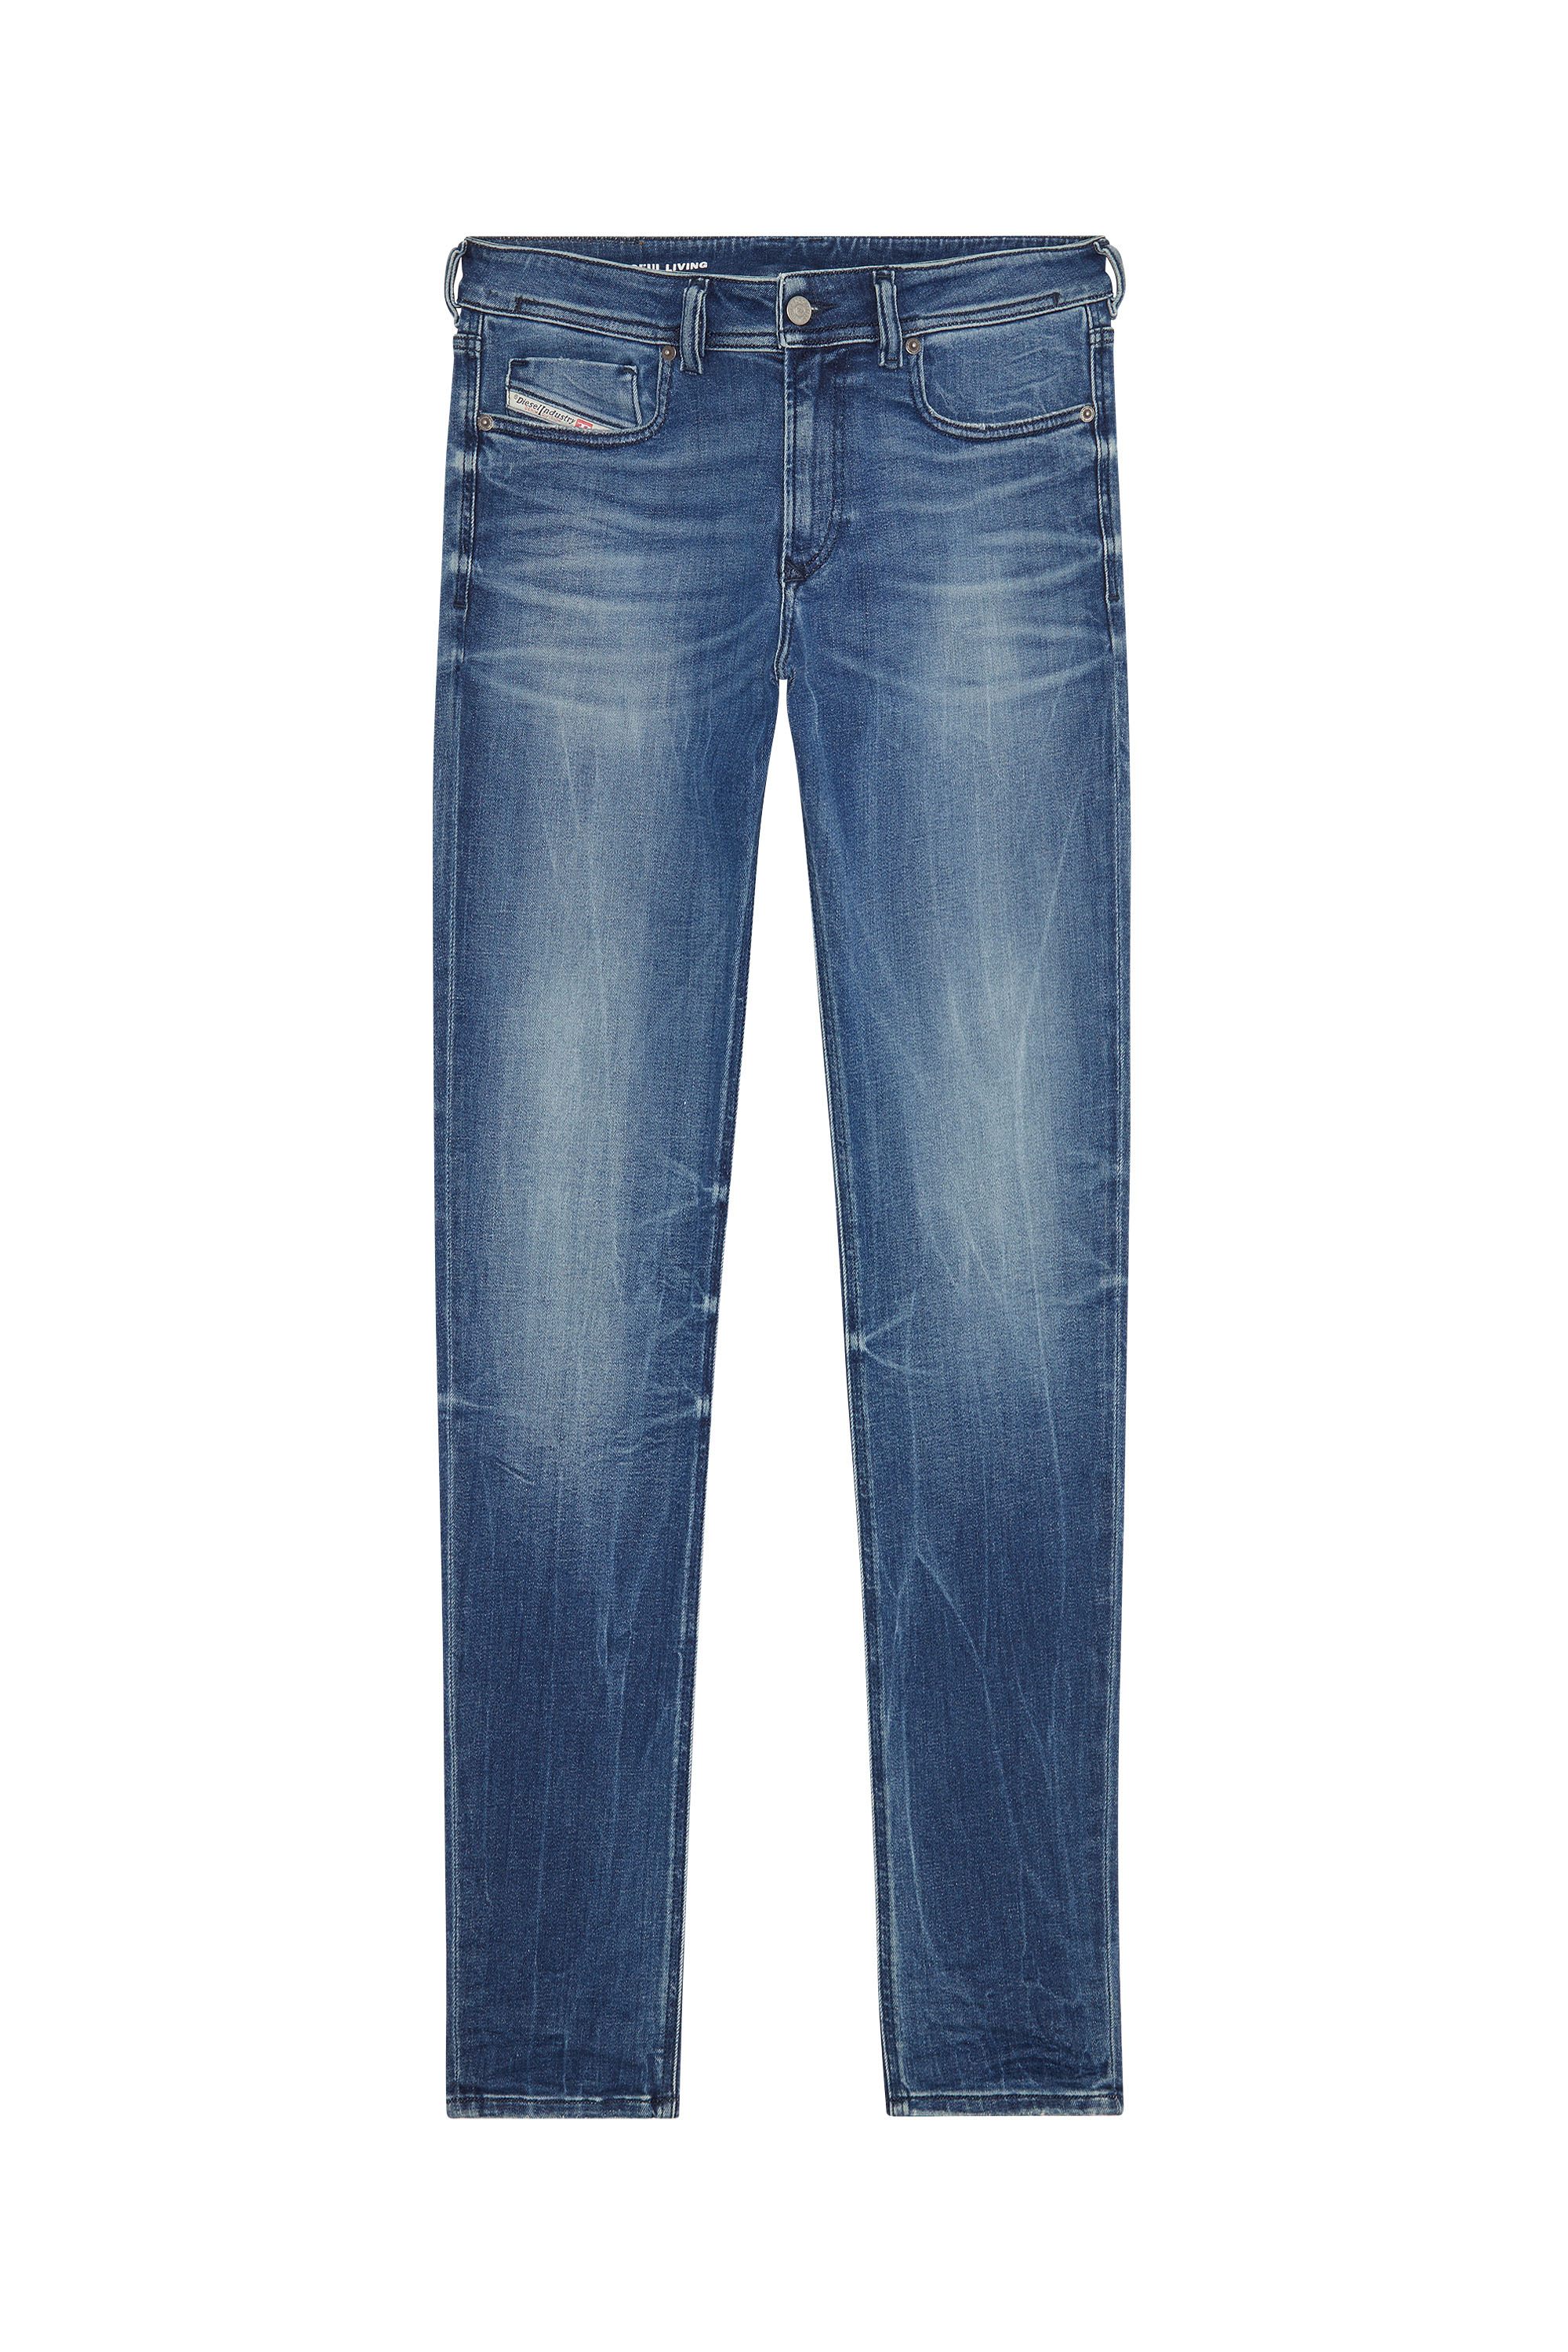 Diesel - Skinny Jeans 1979 Sleenker 09G30, Medium blue - Image 5